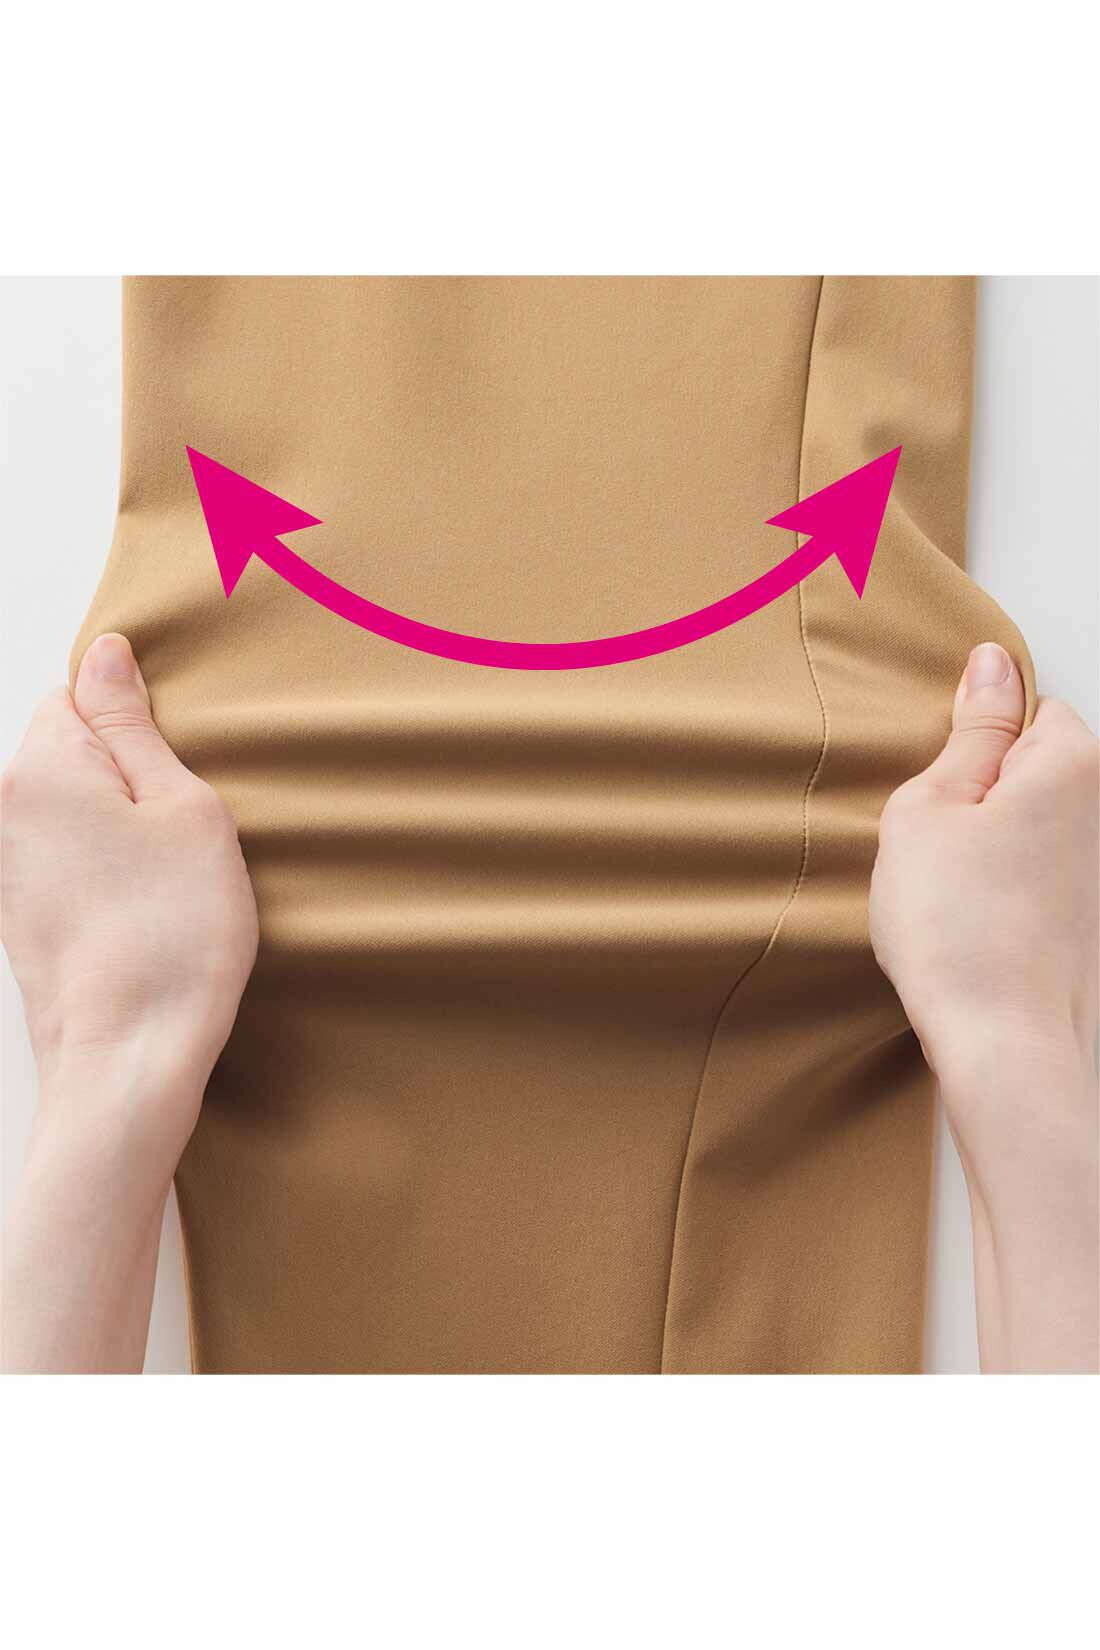 IEDIT|IEDIT[イディット]　ぐいっとしなやか サイドタックデザイン ストレッチ布はく素材のエアノビワイドパンツ〈ネイビー〉|動きに応じてぐいっと伸びるストレッチ素材は、はいているのを忘れるほど軽やかでらくなはき心地。